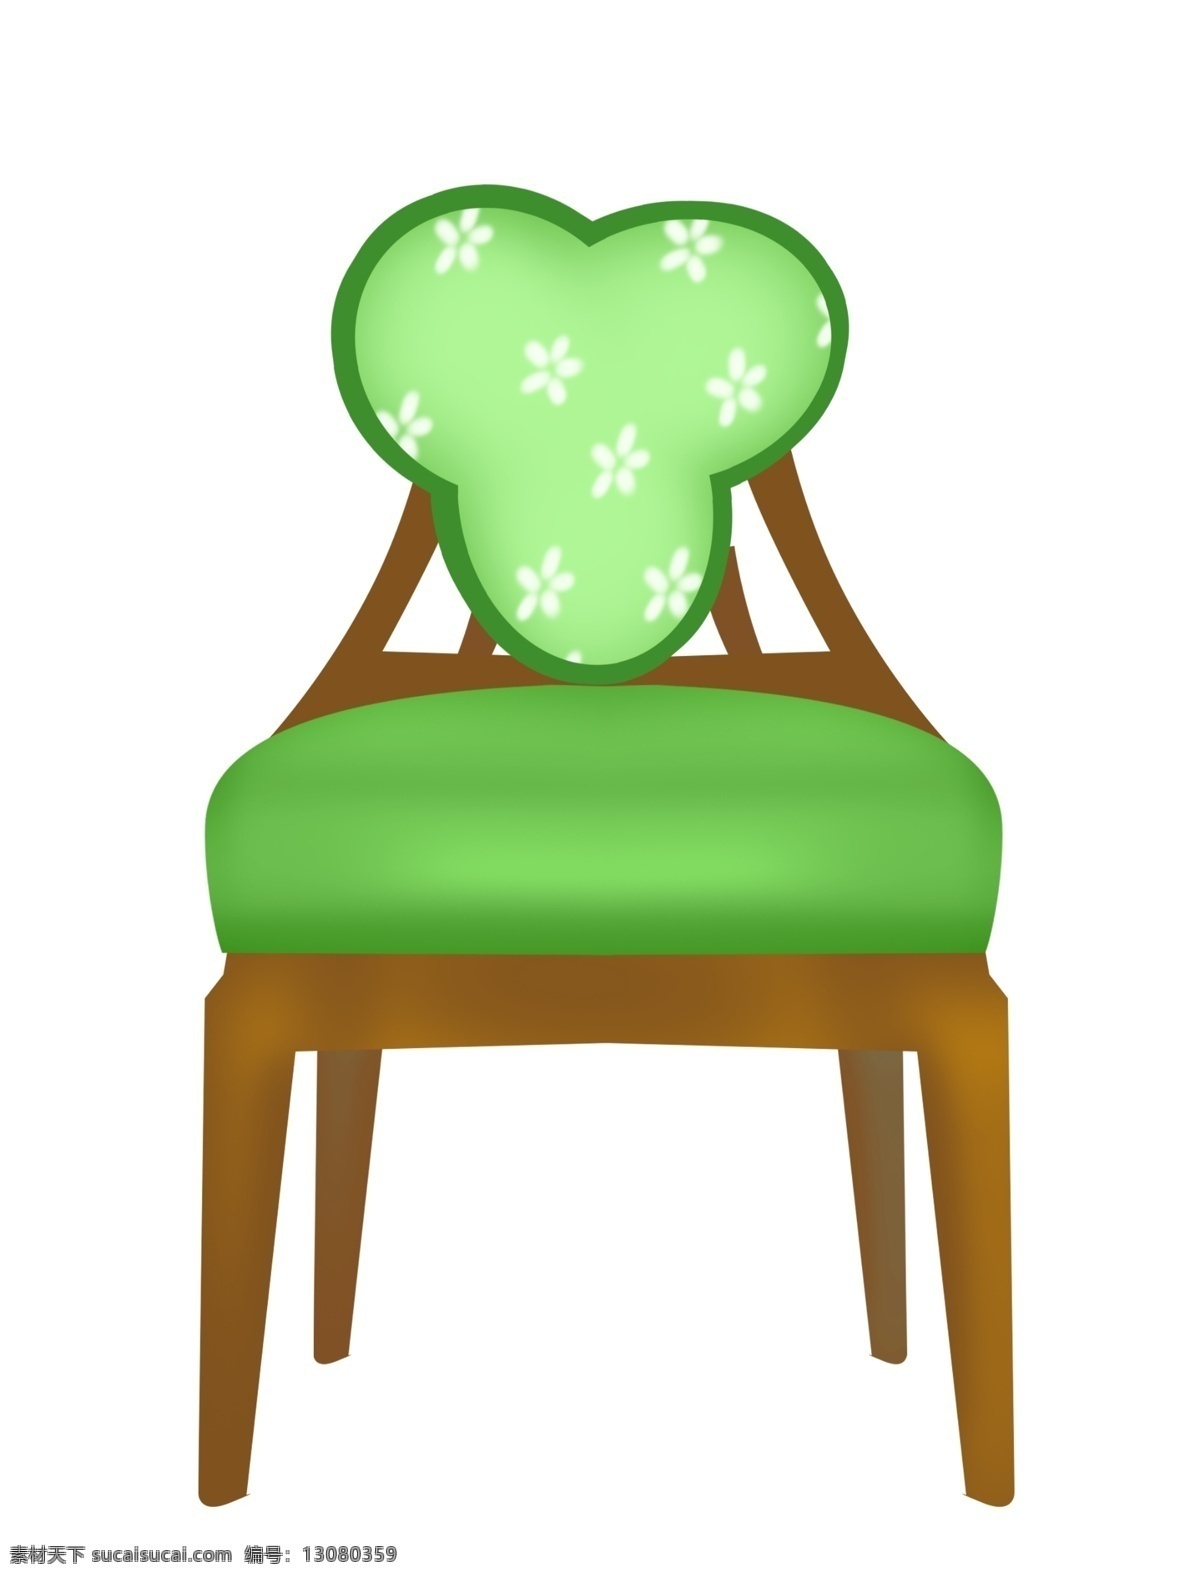 漂亮 绿色 椅子 插图 木质椅子 绿色垫子 绿色椅子 漂亮的椅子 绿色椅子插图 化妆台椅子 化妆椅子